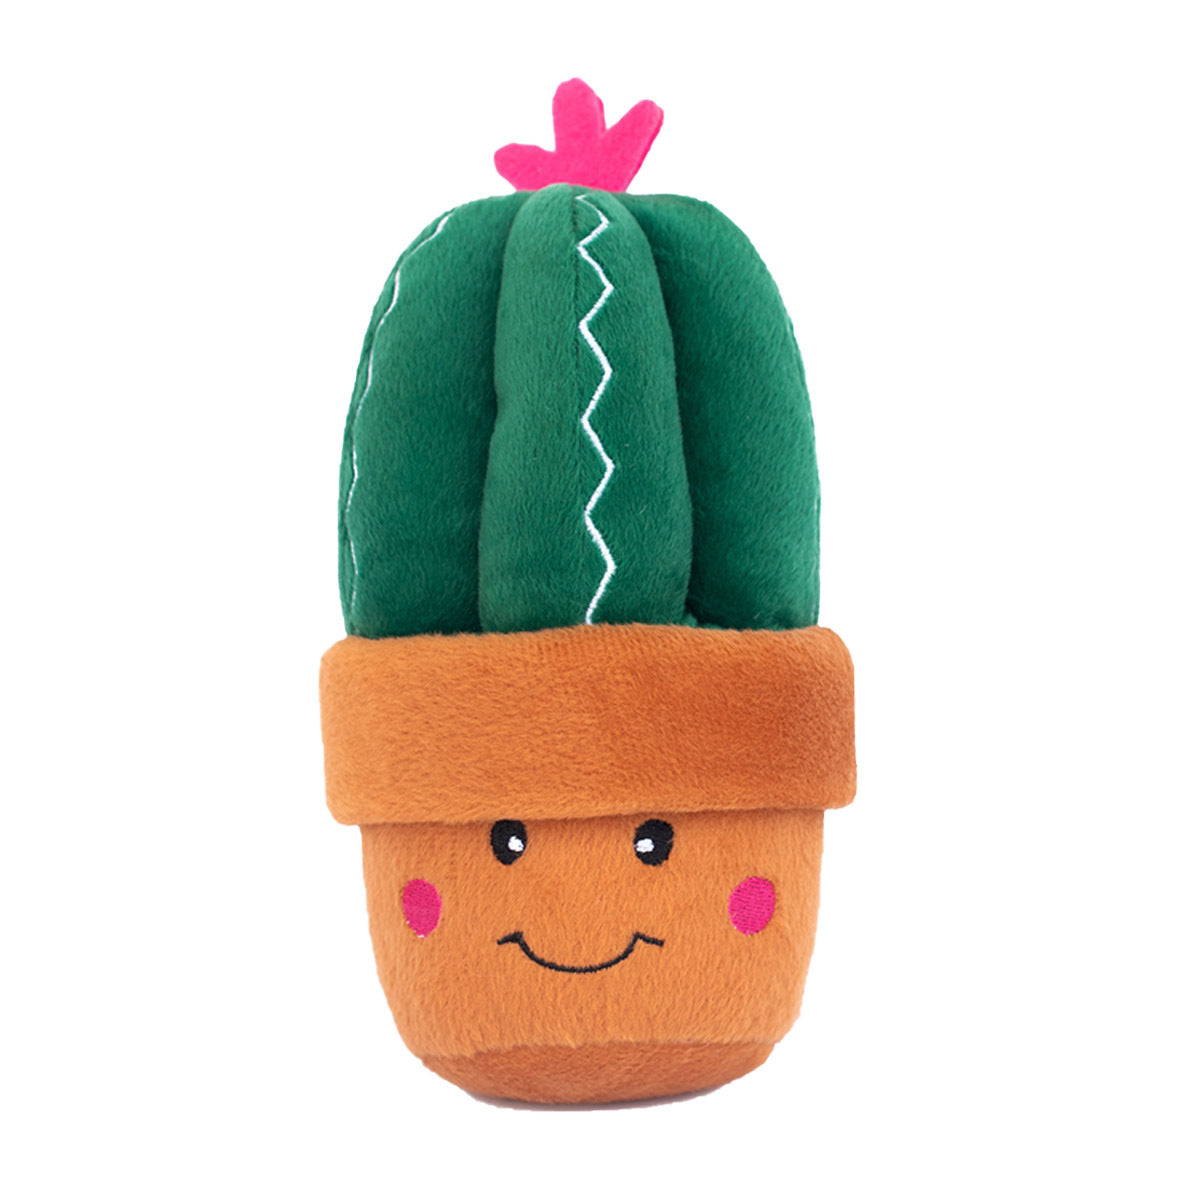 ZippyPaws Carmen the Cactus  |  Squeaky Plush Toy